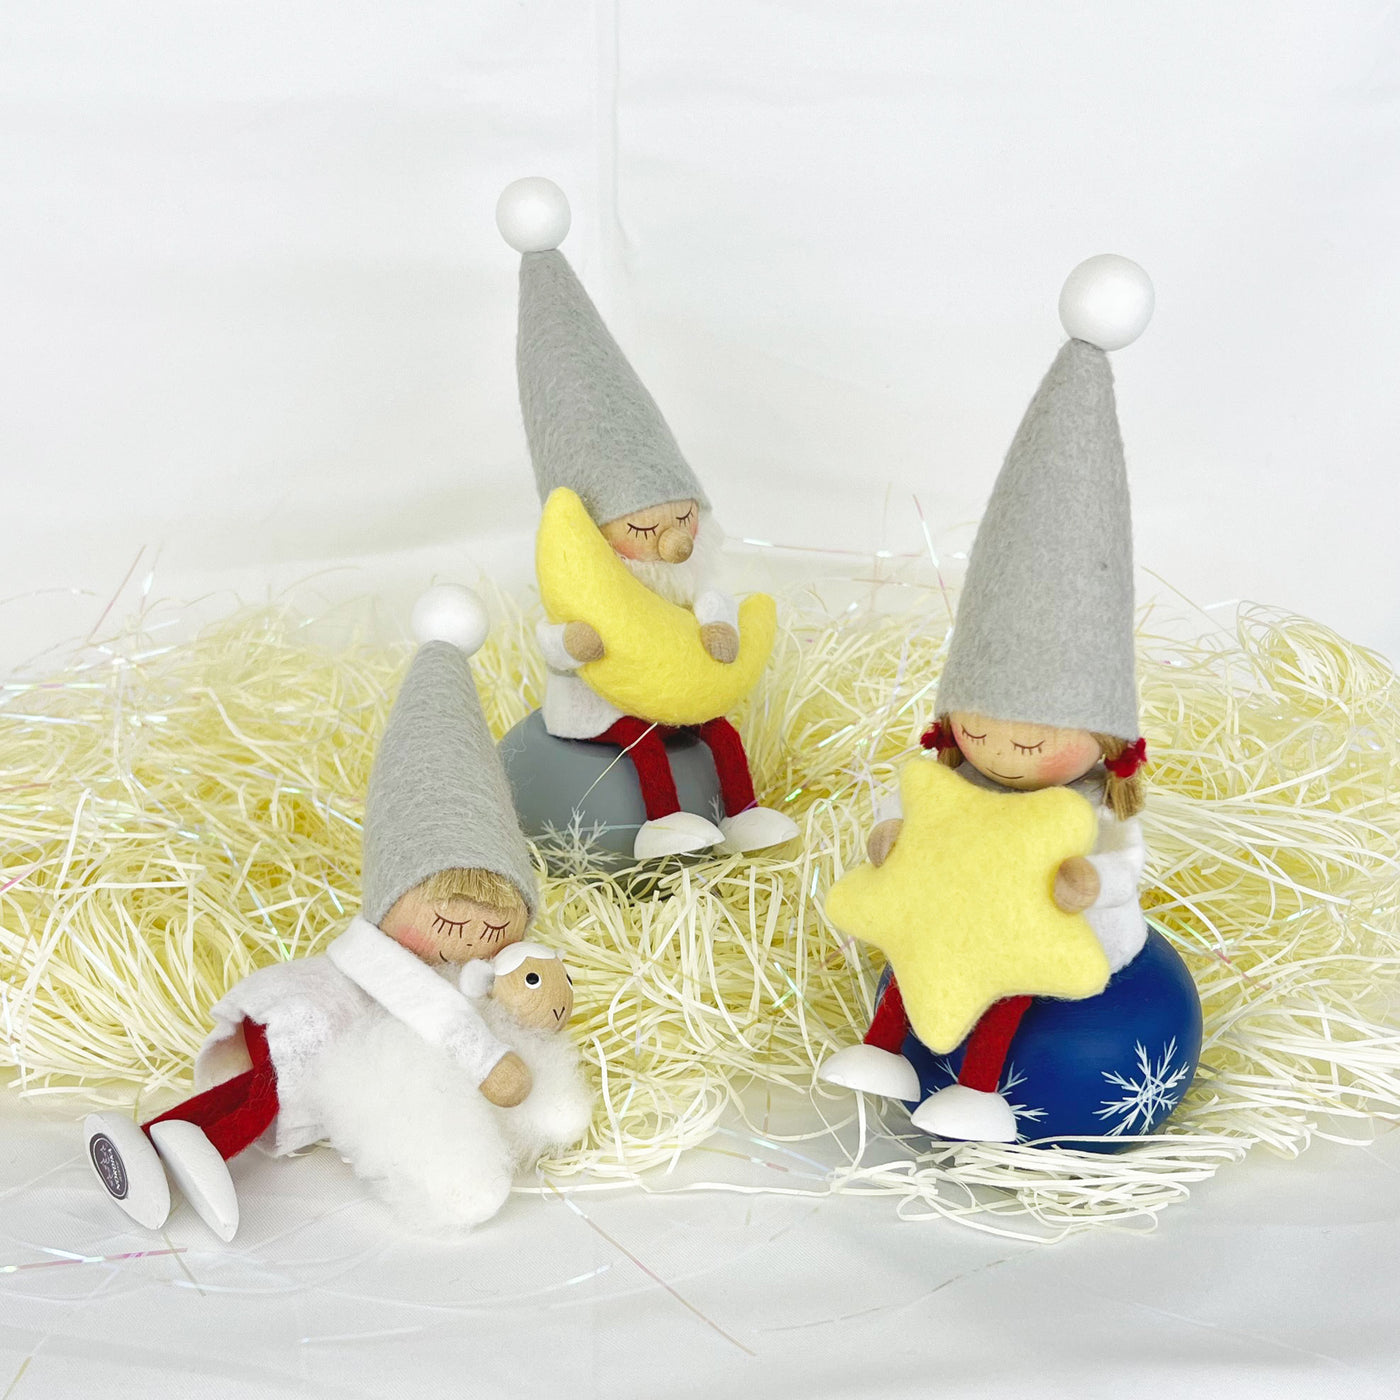 NORDIKA nisse ノルディカ ニッセ クリスマス 木製人形 ( スツール / スノーフレーク / ブルー )